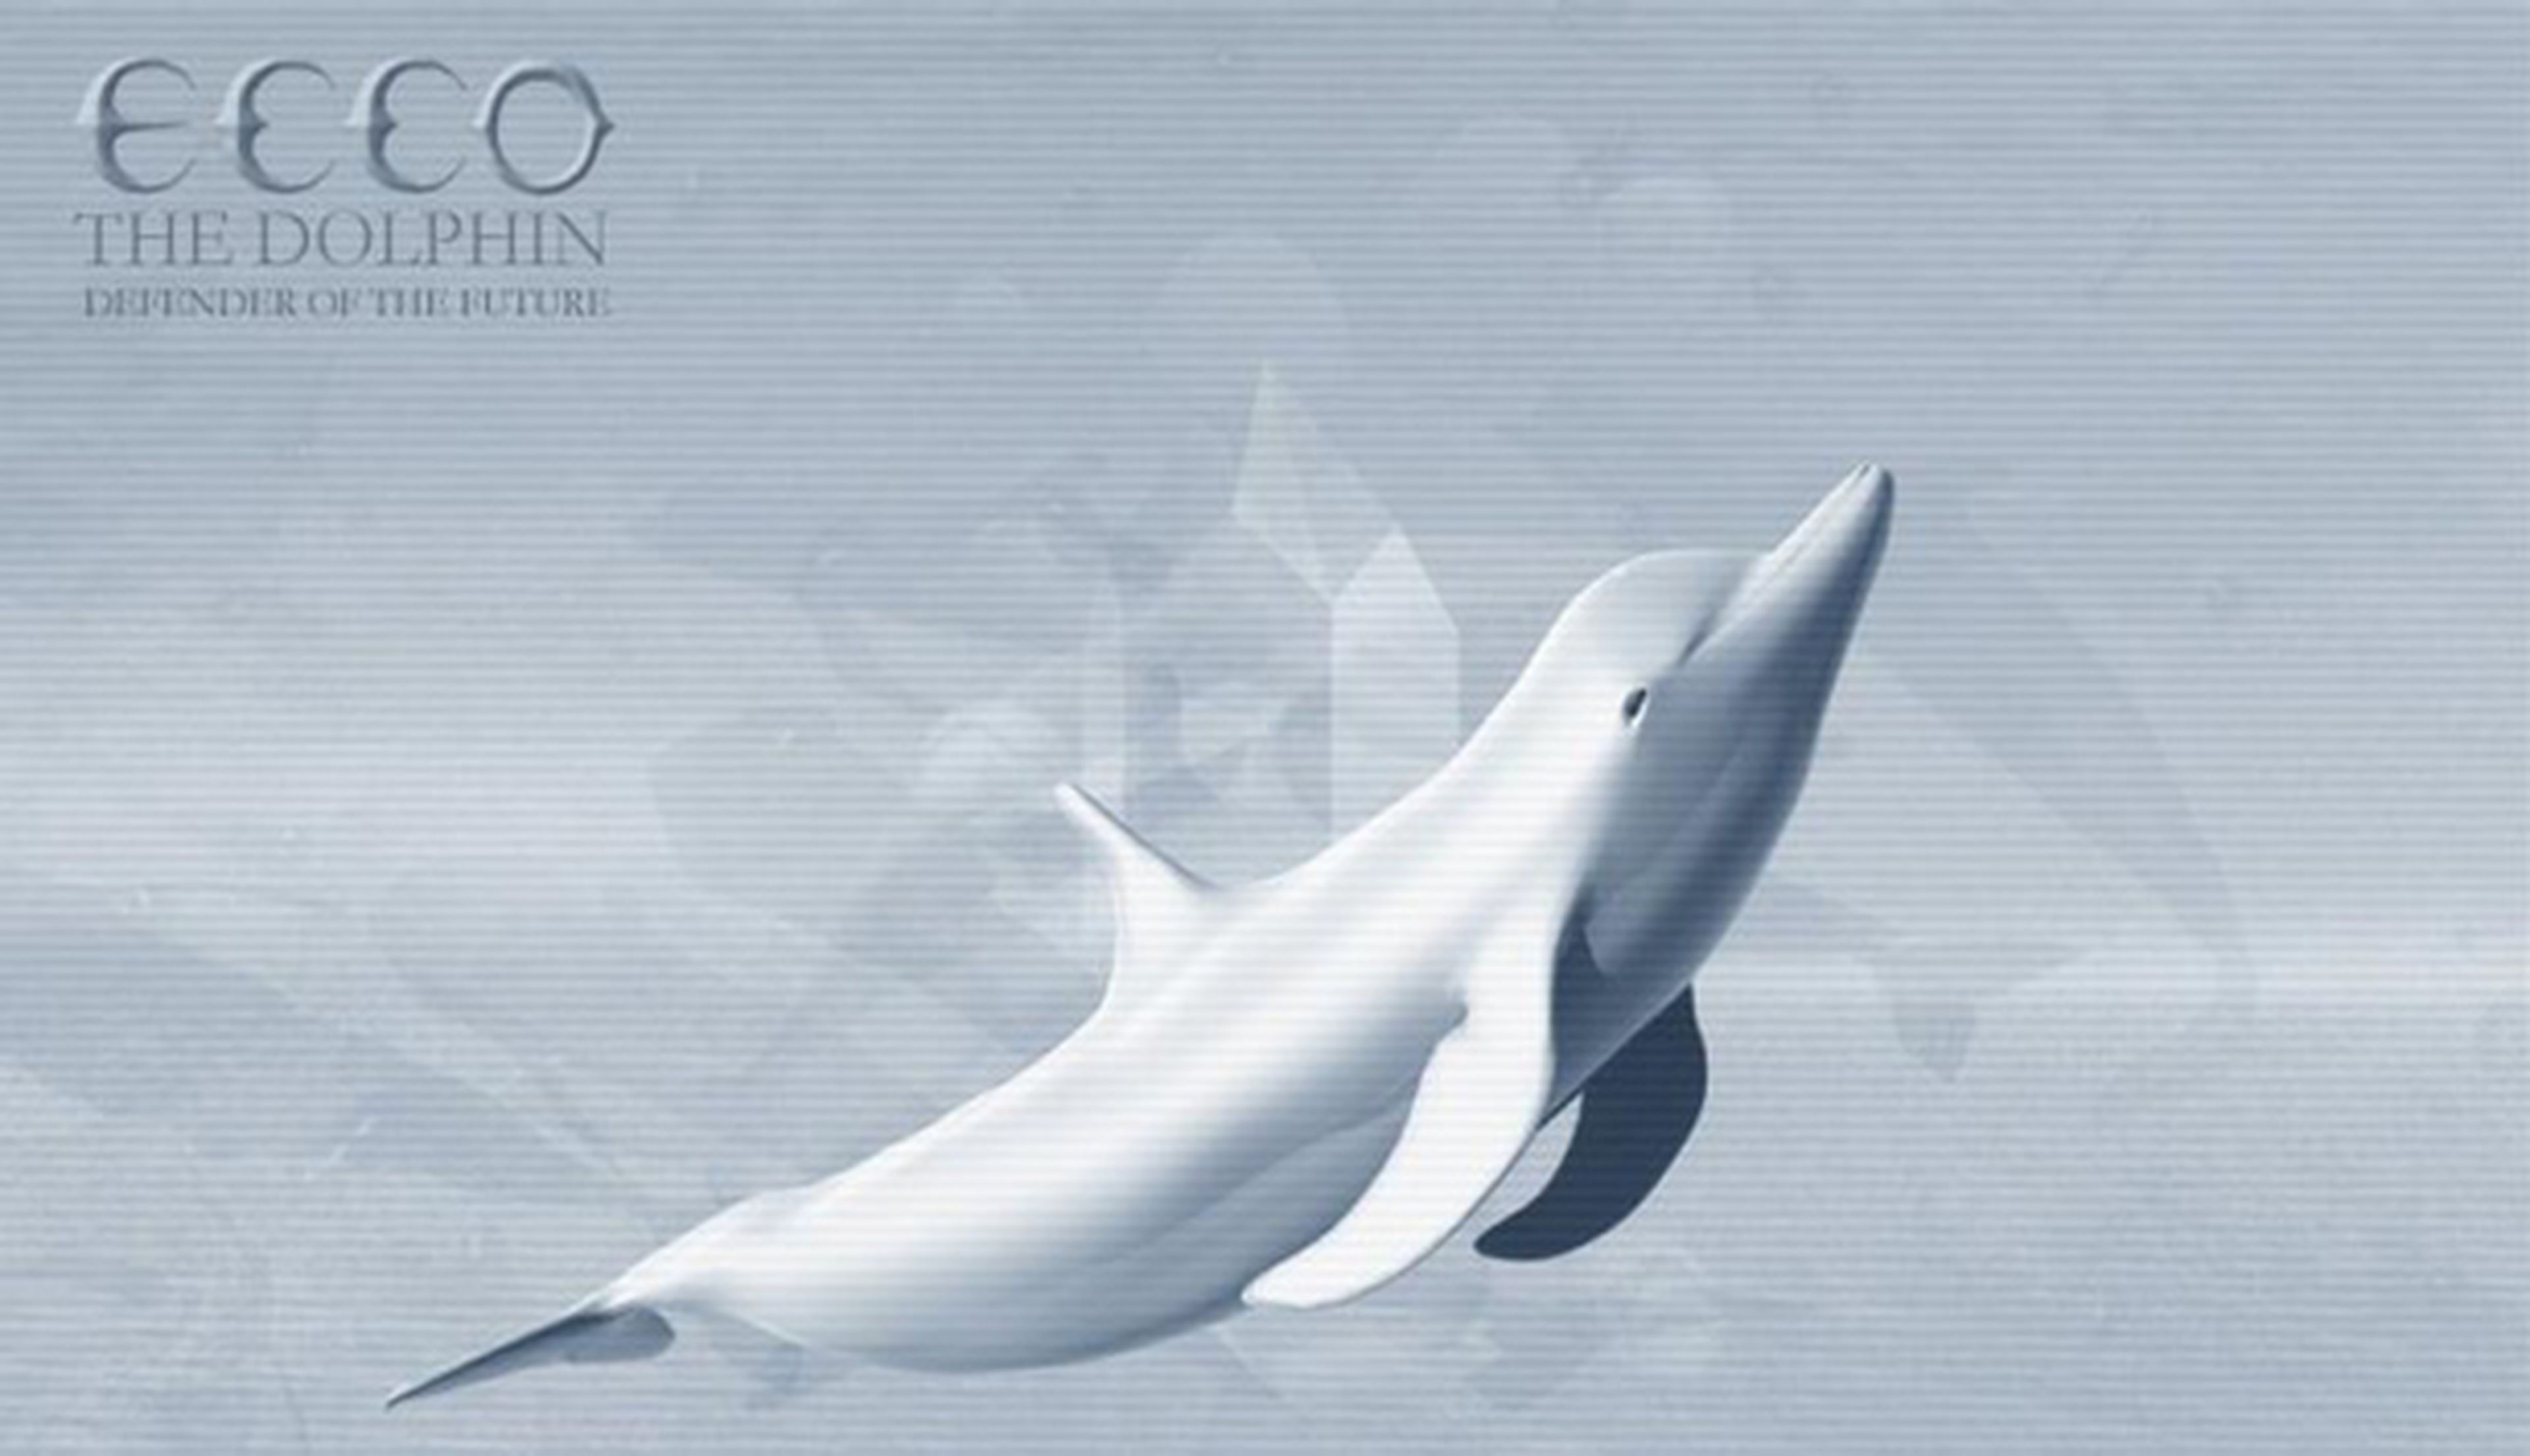 La vuelta de Ecco the Dolphin, más cerca que nunca